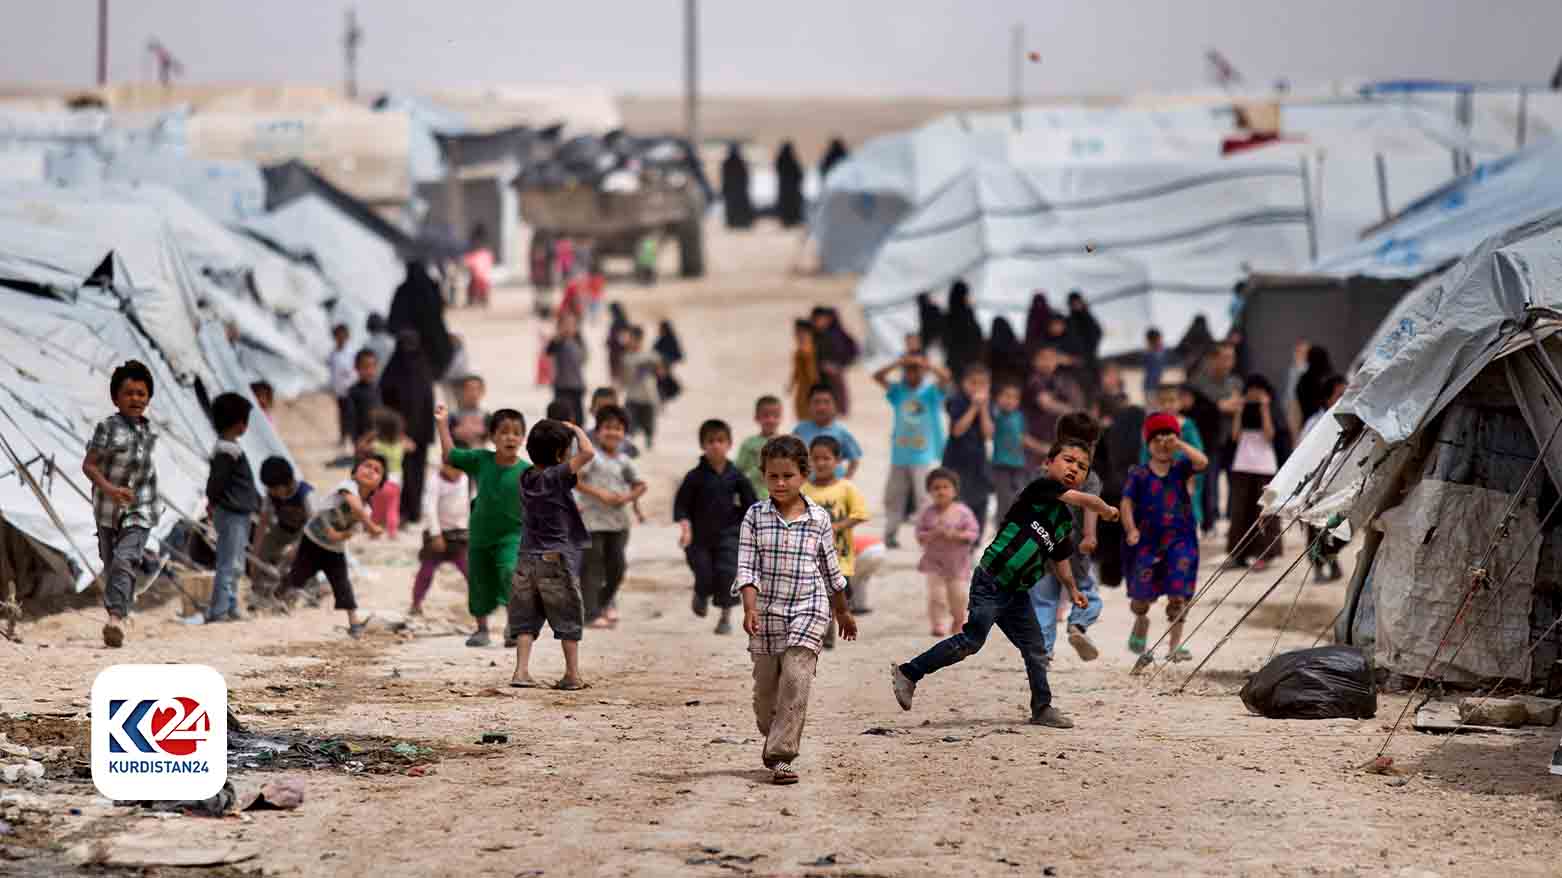 Children play around within the camp. (Photo: Kurdistan24)